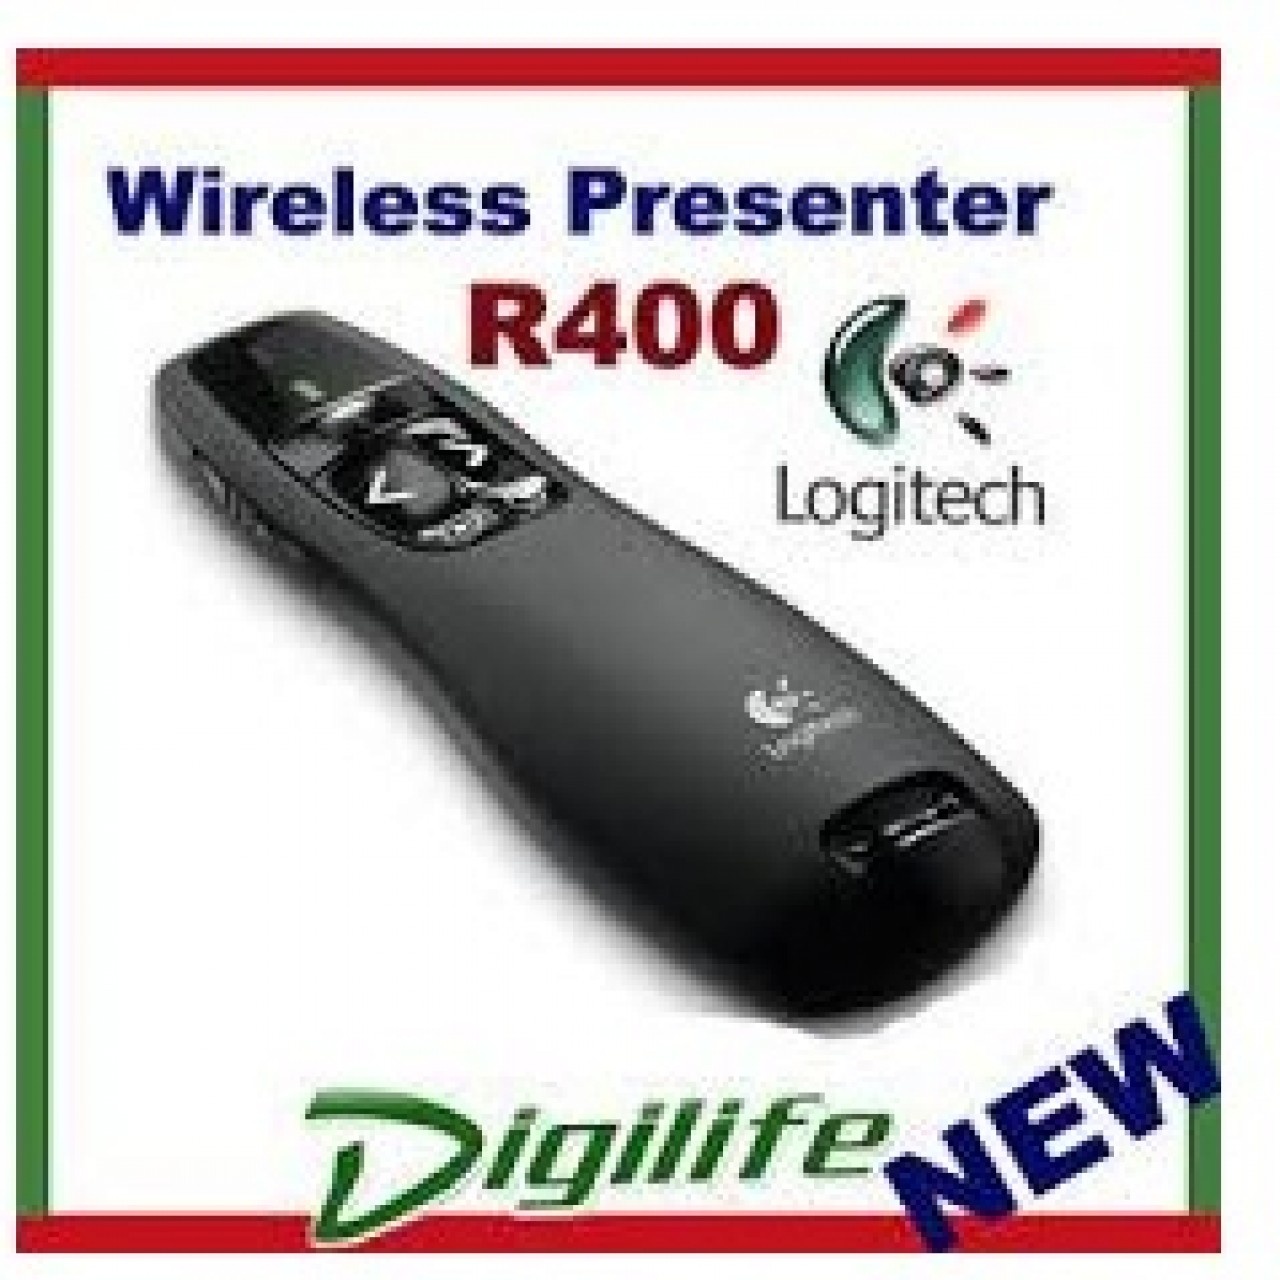 34. Logitech Wireless Presenter R400 (910-001361) – Red Laser Pointer – 15 Meters Range – 2.4 GHz Wi